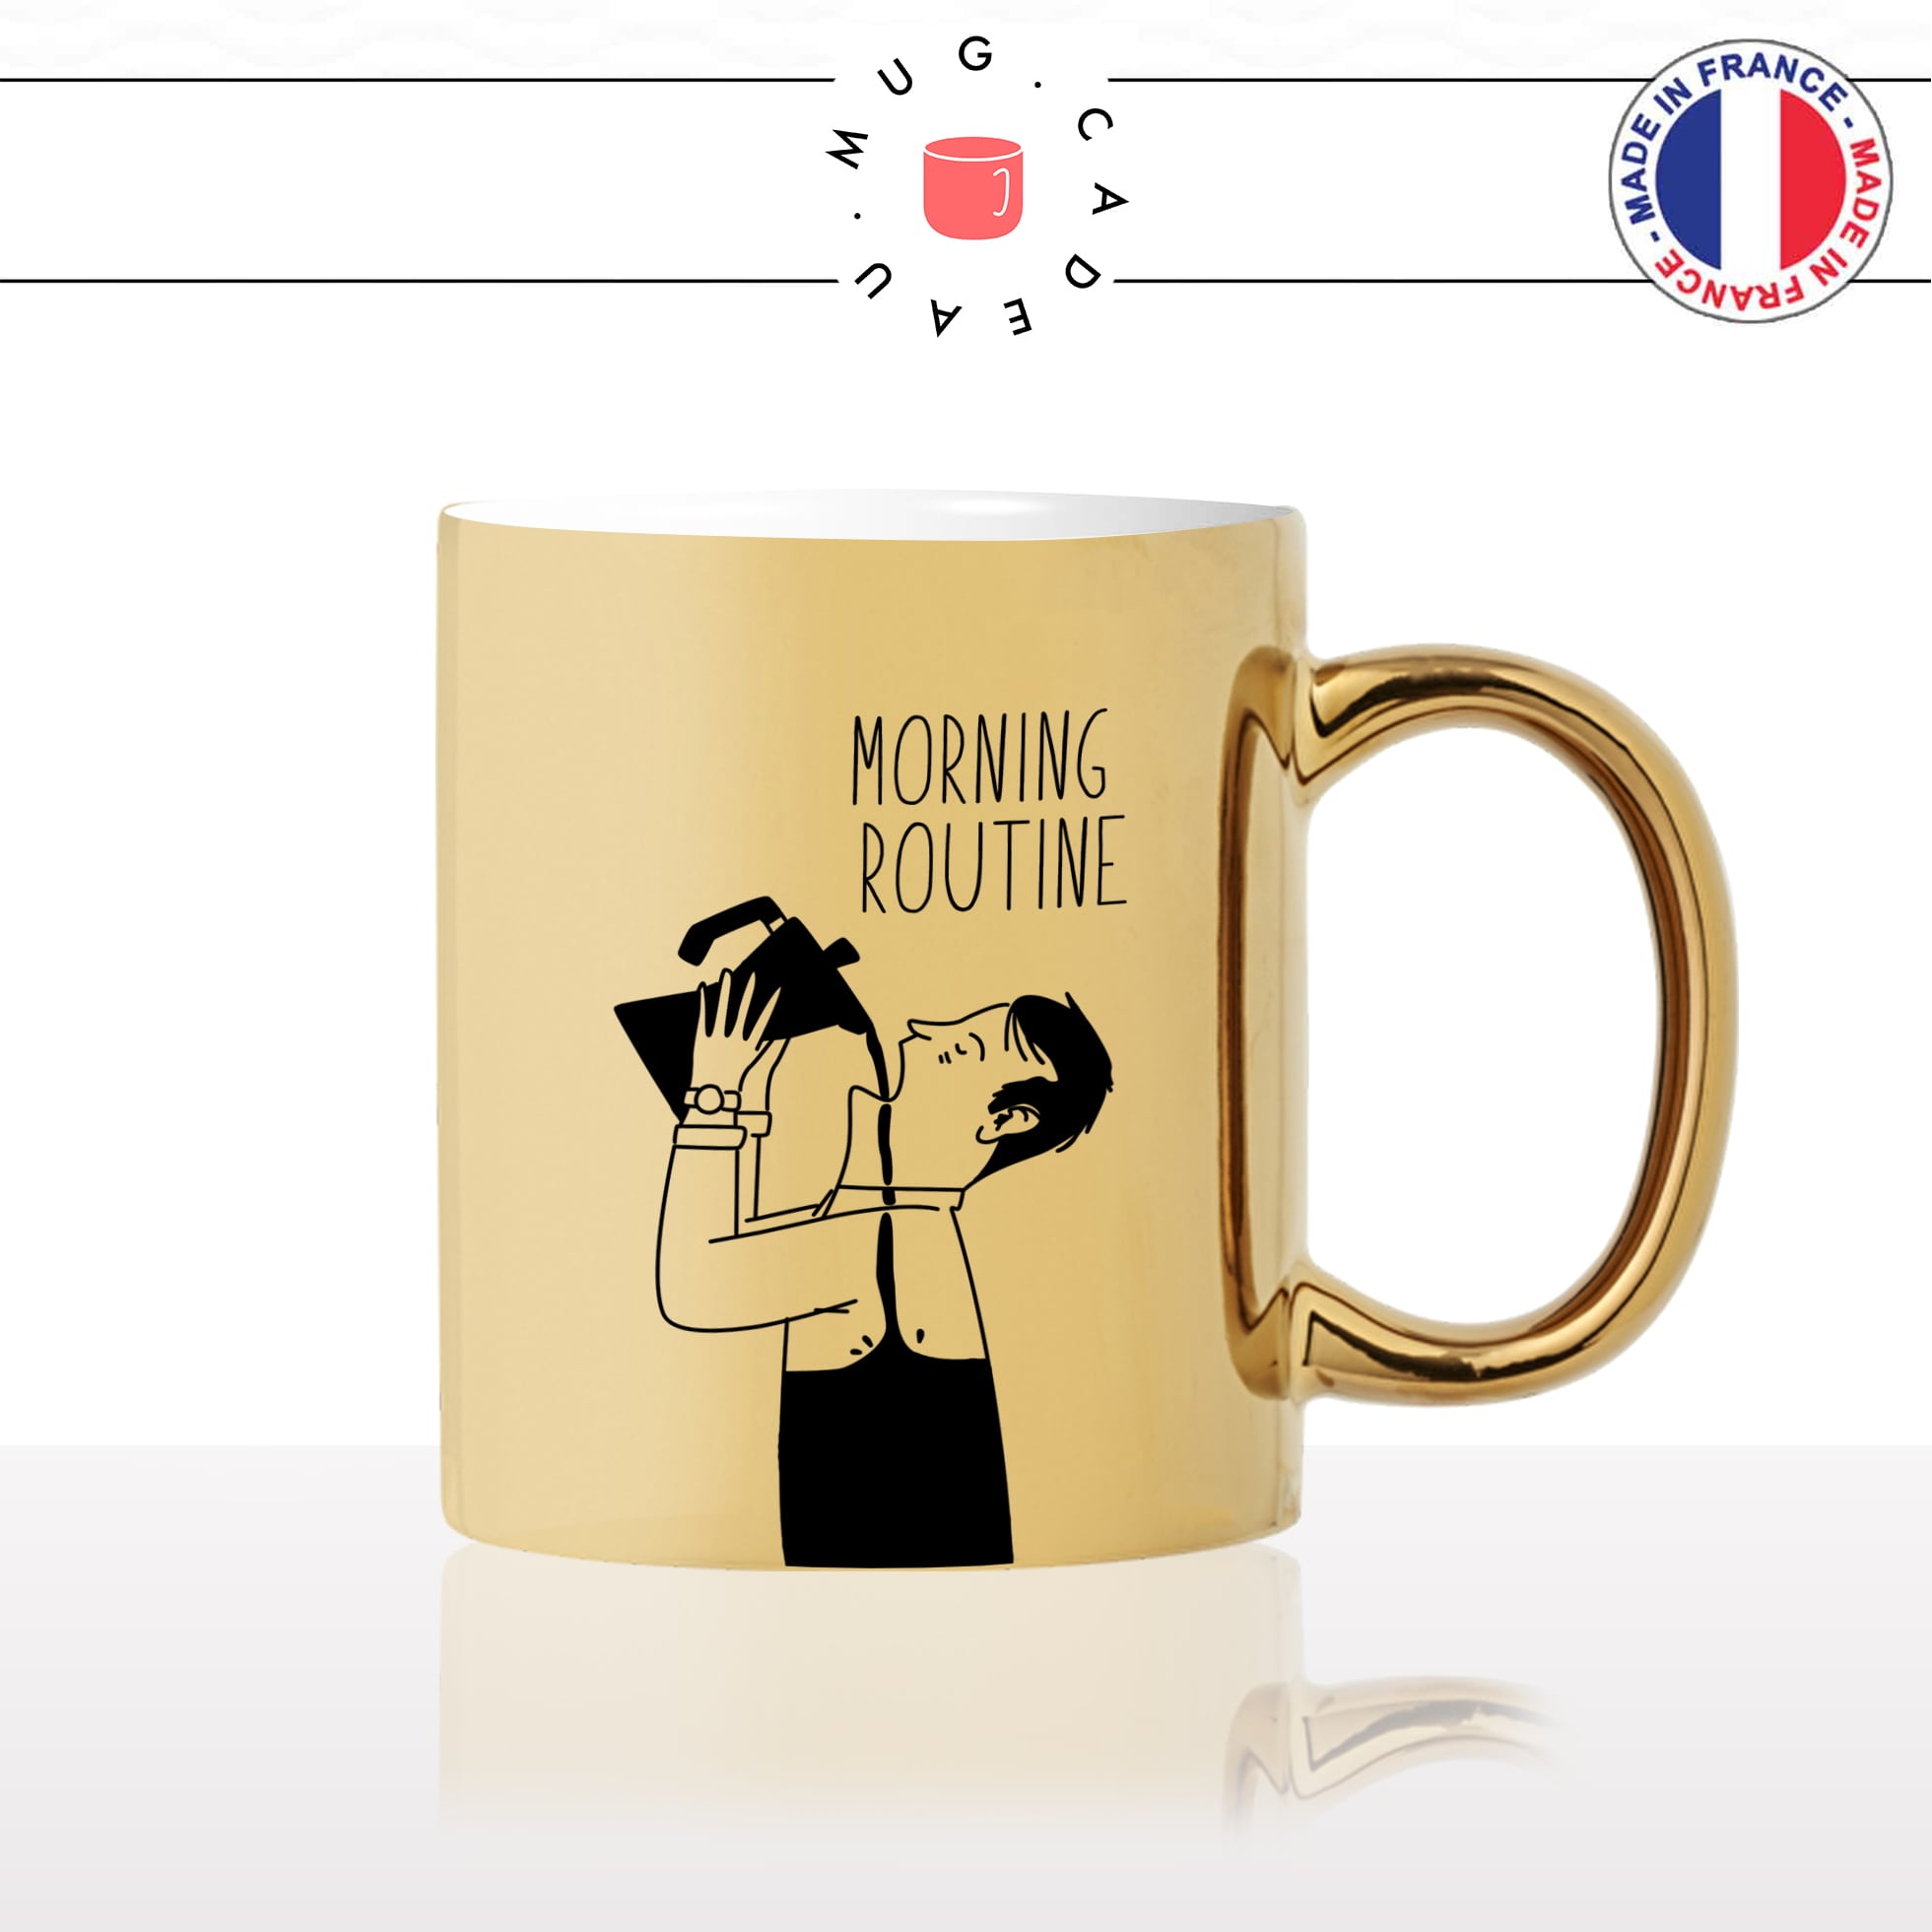 mug-tasse-doré-or-gold-morning-routine-coffee-matin-reveil-week-end-humour-boulot-idée-cadeau-personnalisé-café-thé2-min